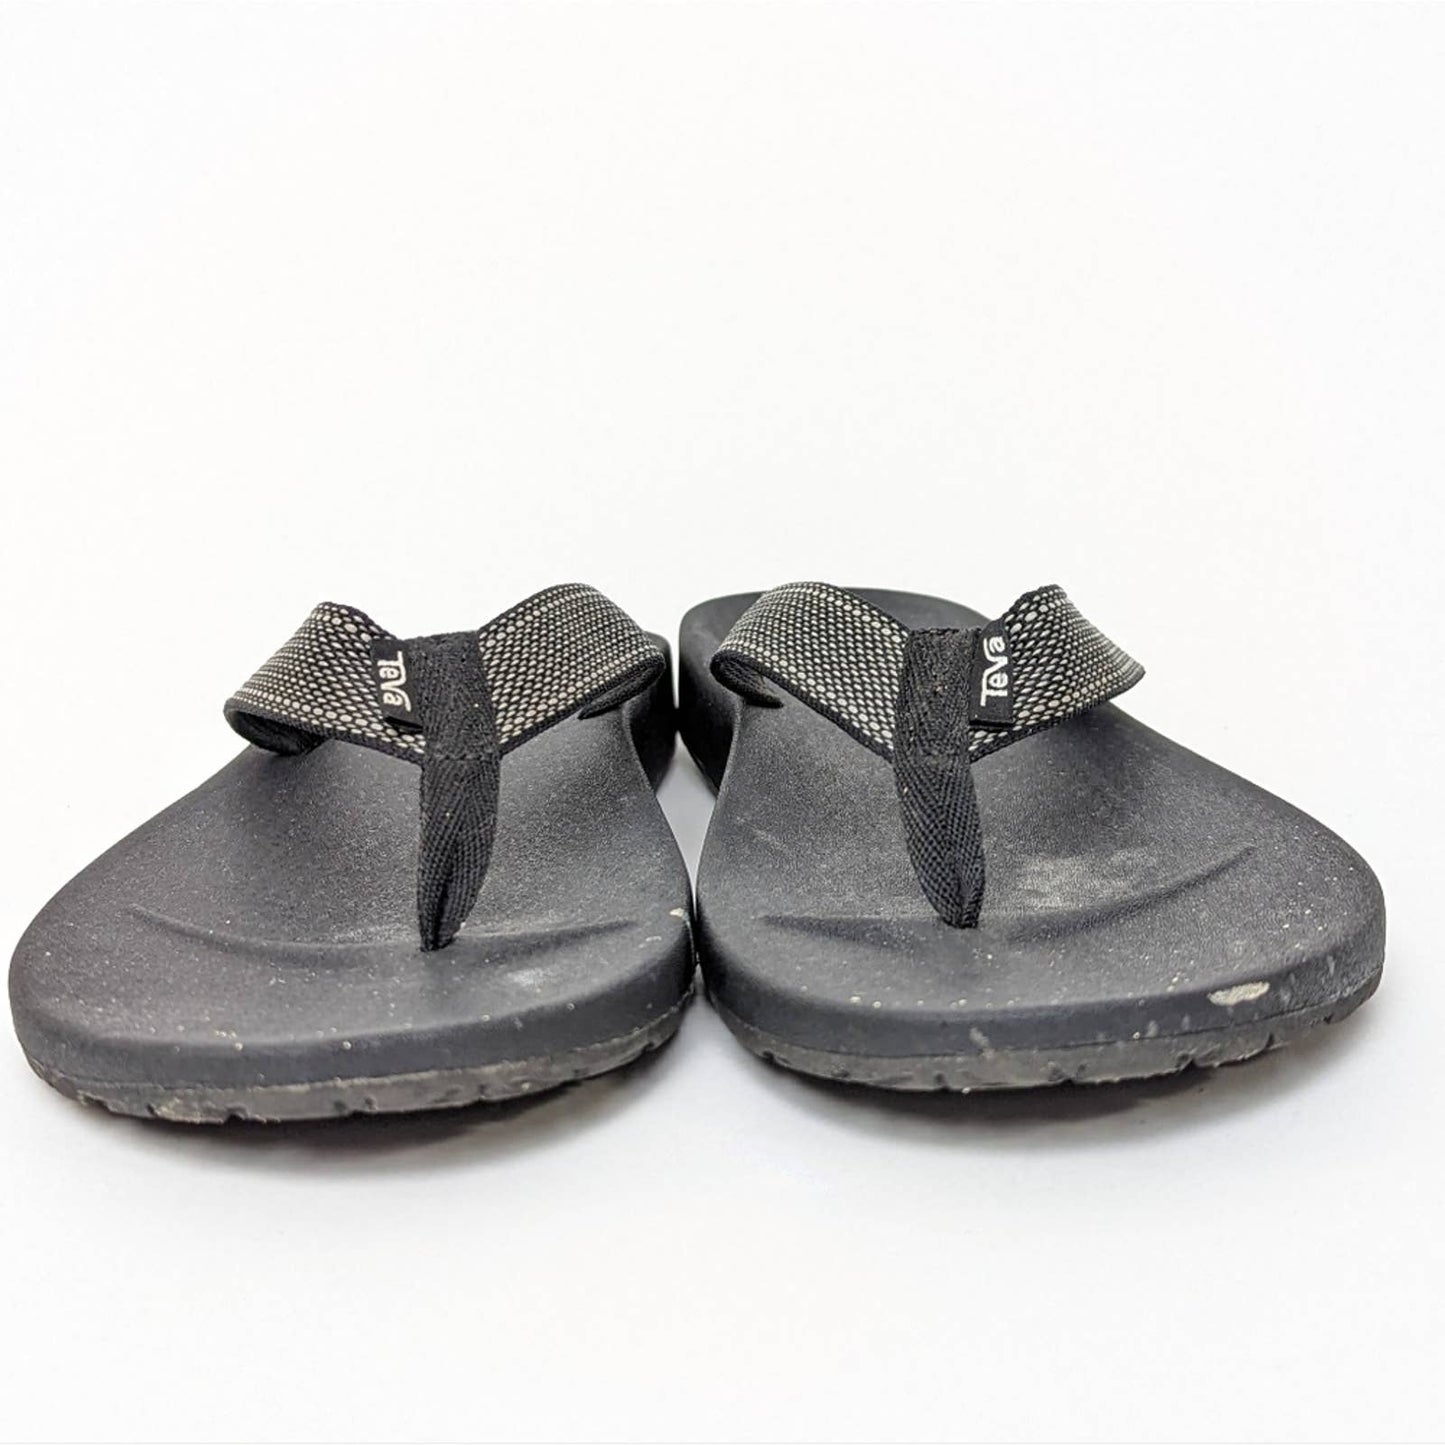 Teva Azure Flip Flop Sandals in Avalon Black - 10